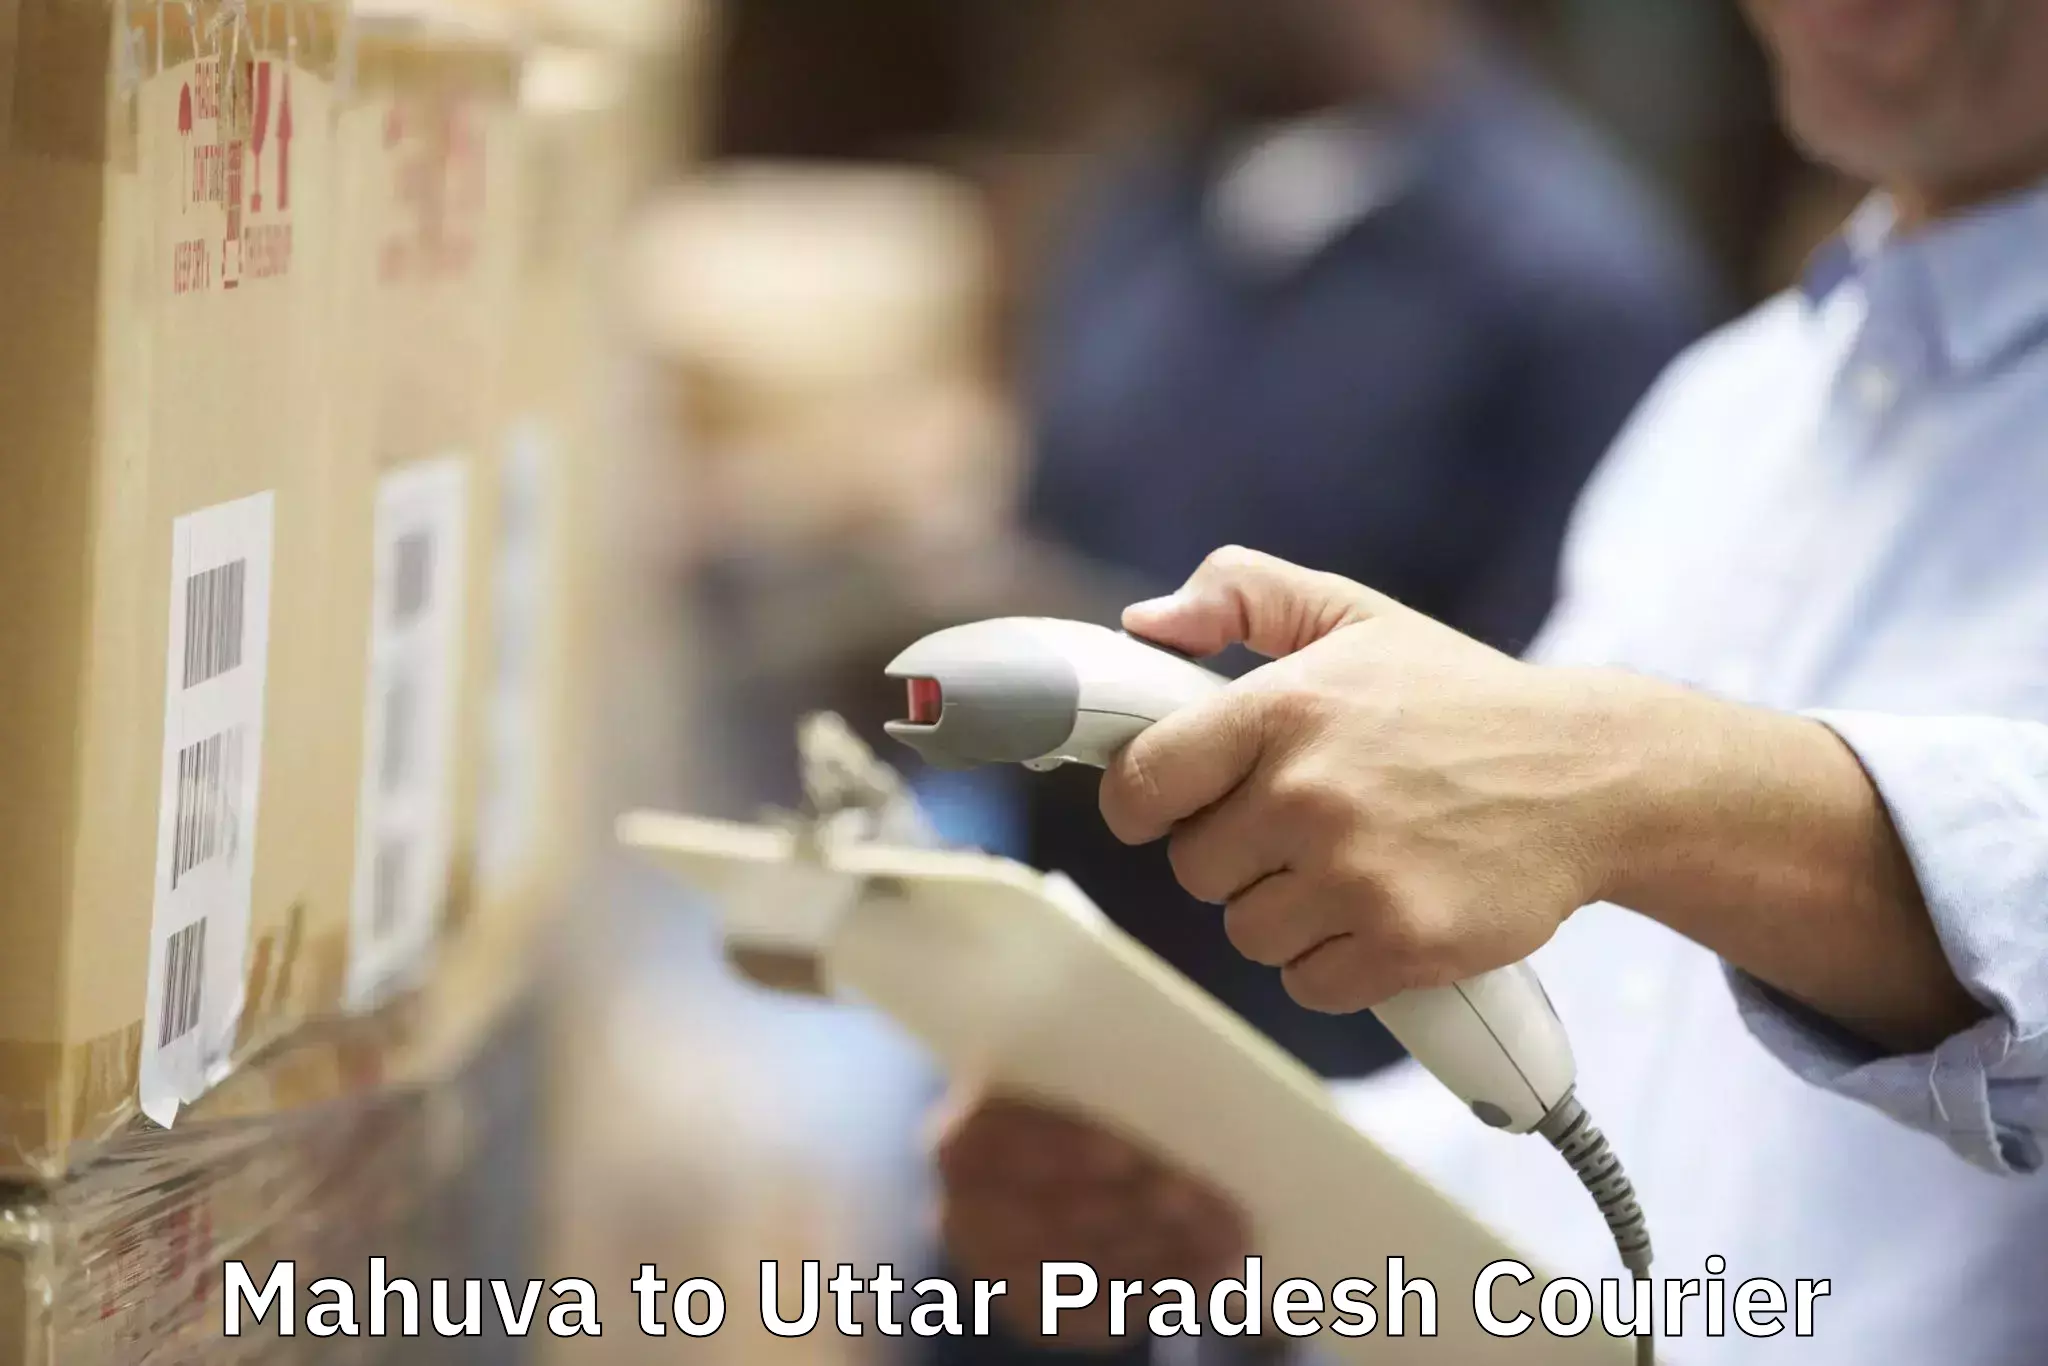 Trusted moving company Mahuva to Uttar Pradesh